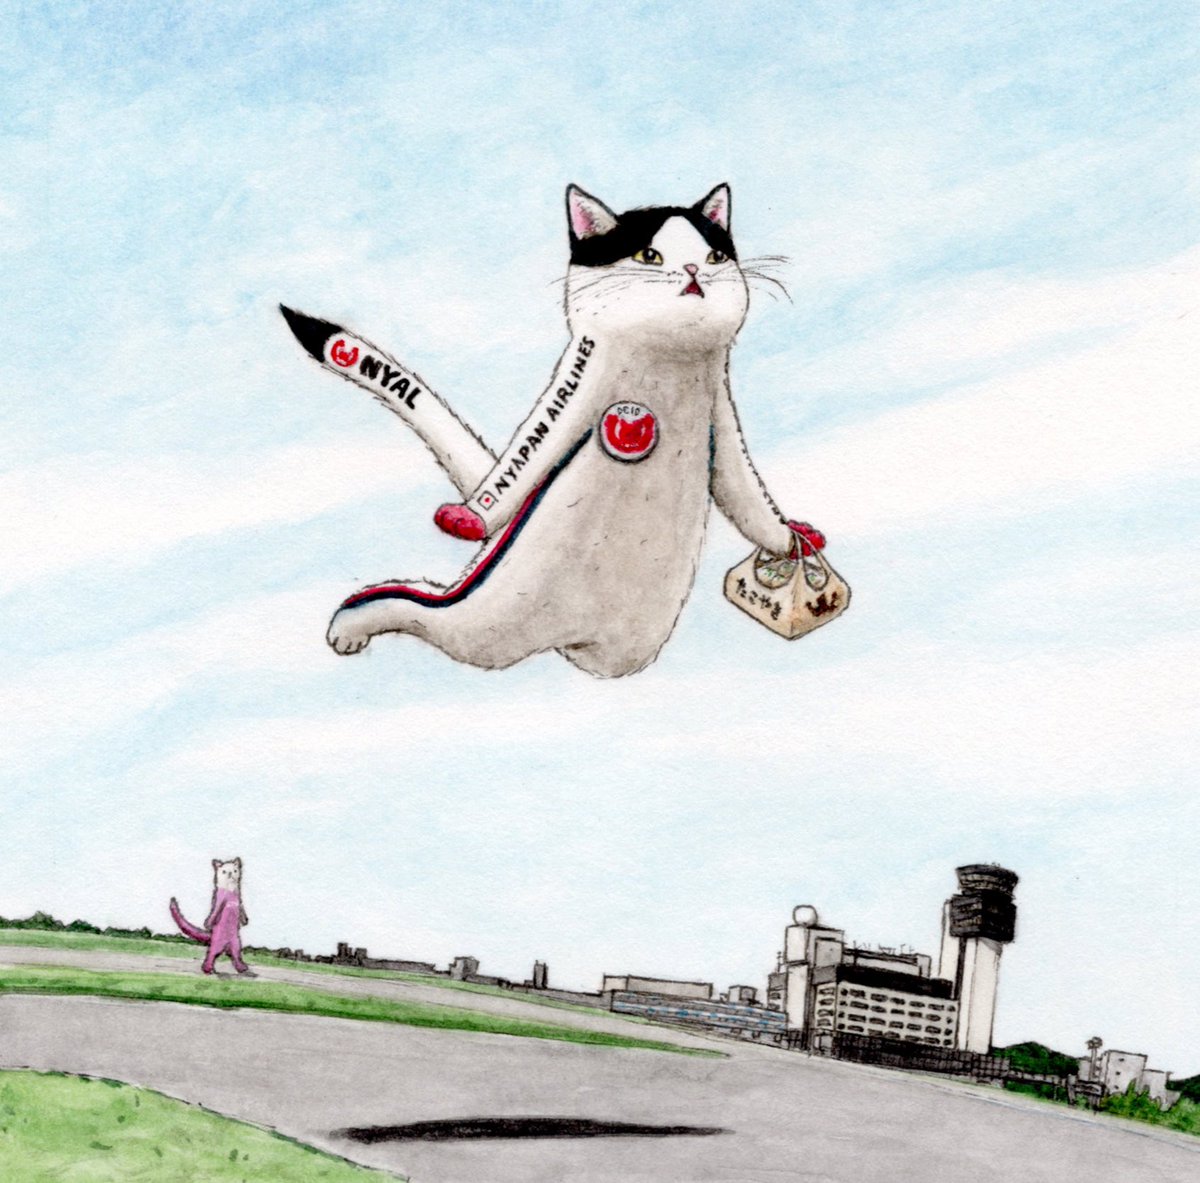 「猫フライトCollection  いざ空へ!  #猫 #猫フライト #イラスト」|エルクポットの動物群像絵🐾のイラスト